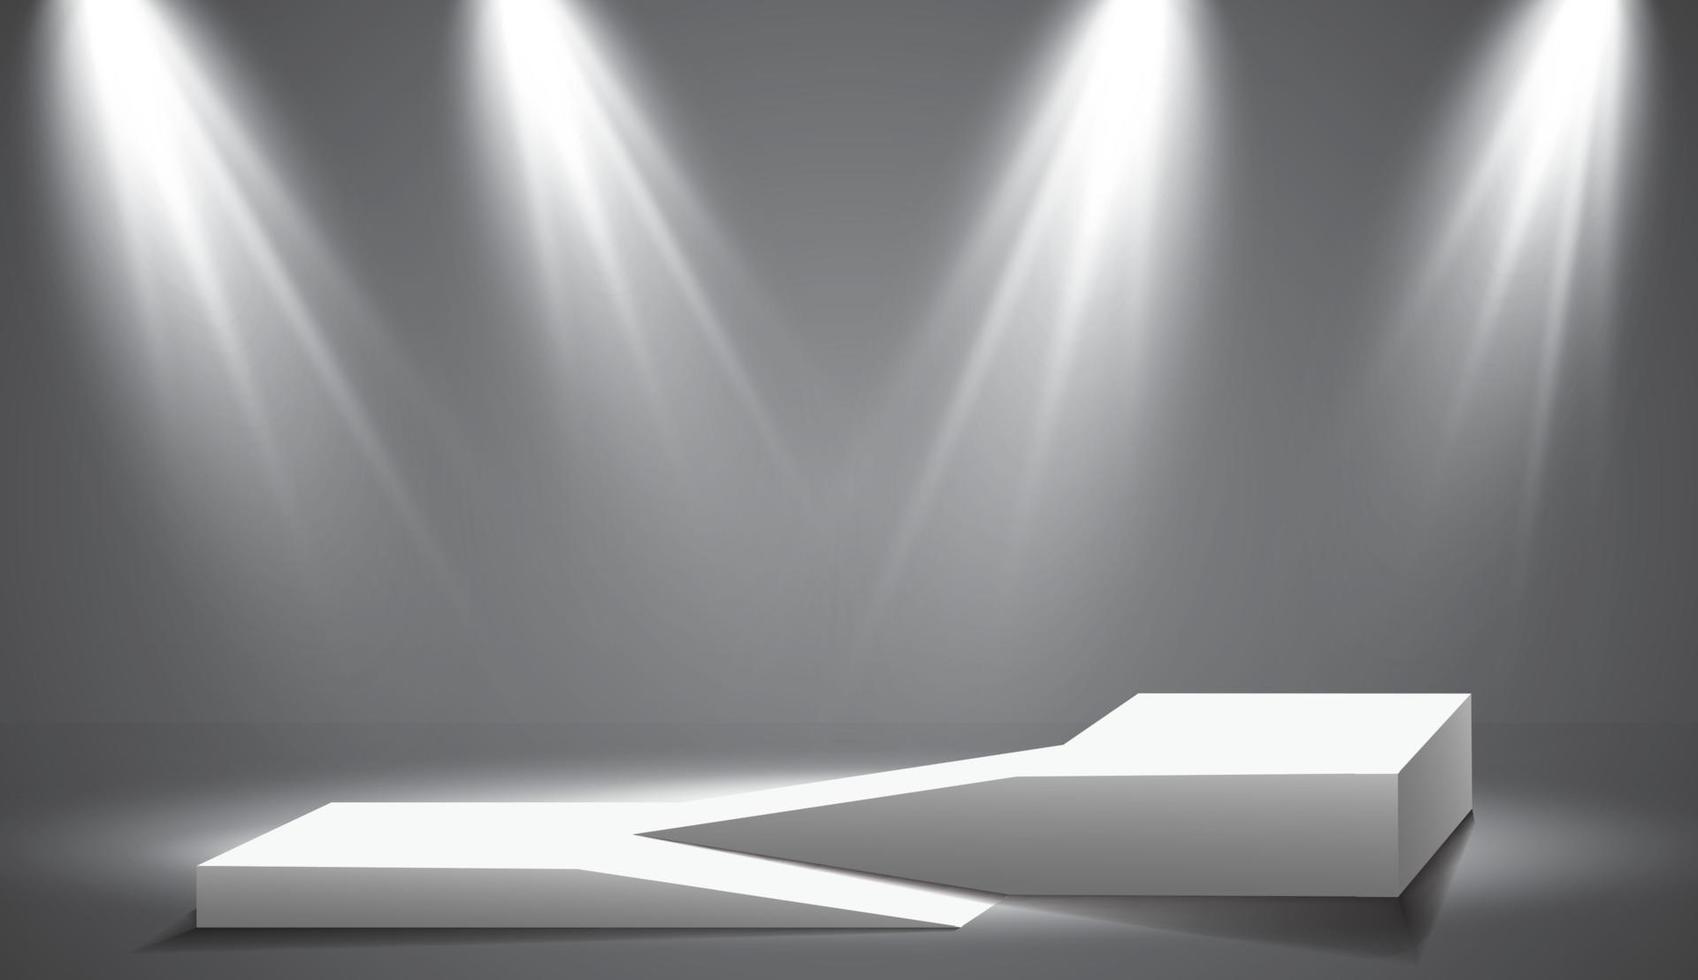 das Rampe von das Podium, Sockel oder Plattform ist beleuchtet durch Scheinwerfer auf ein grau Hintergrund. Szene mit malerisch Beleuchtung. Vektor Illustration.